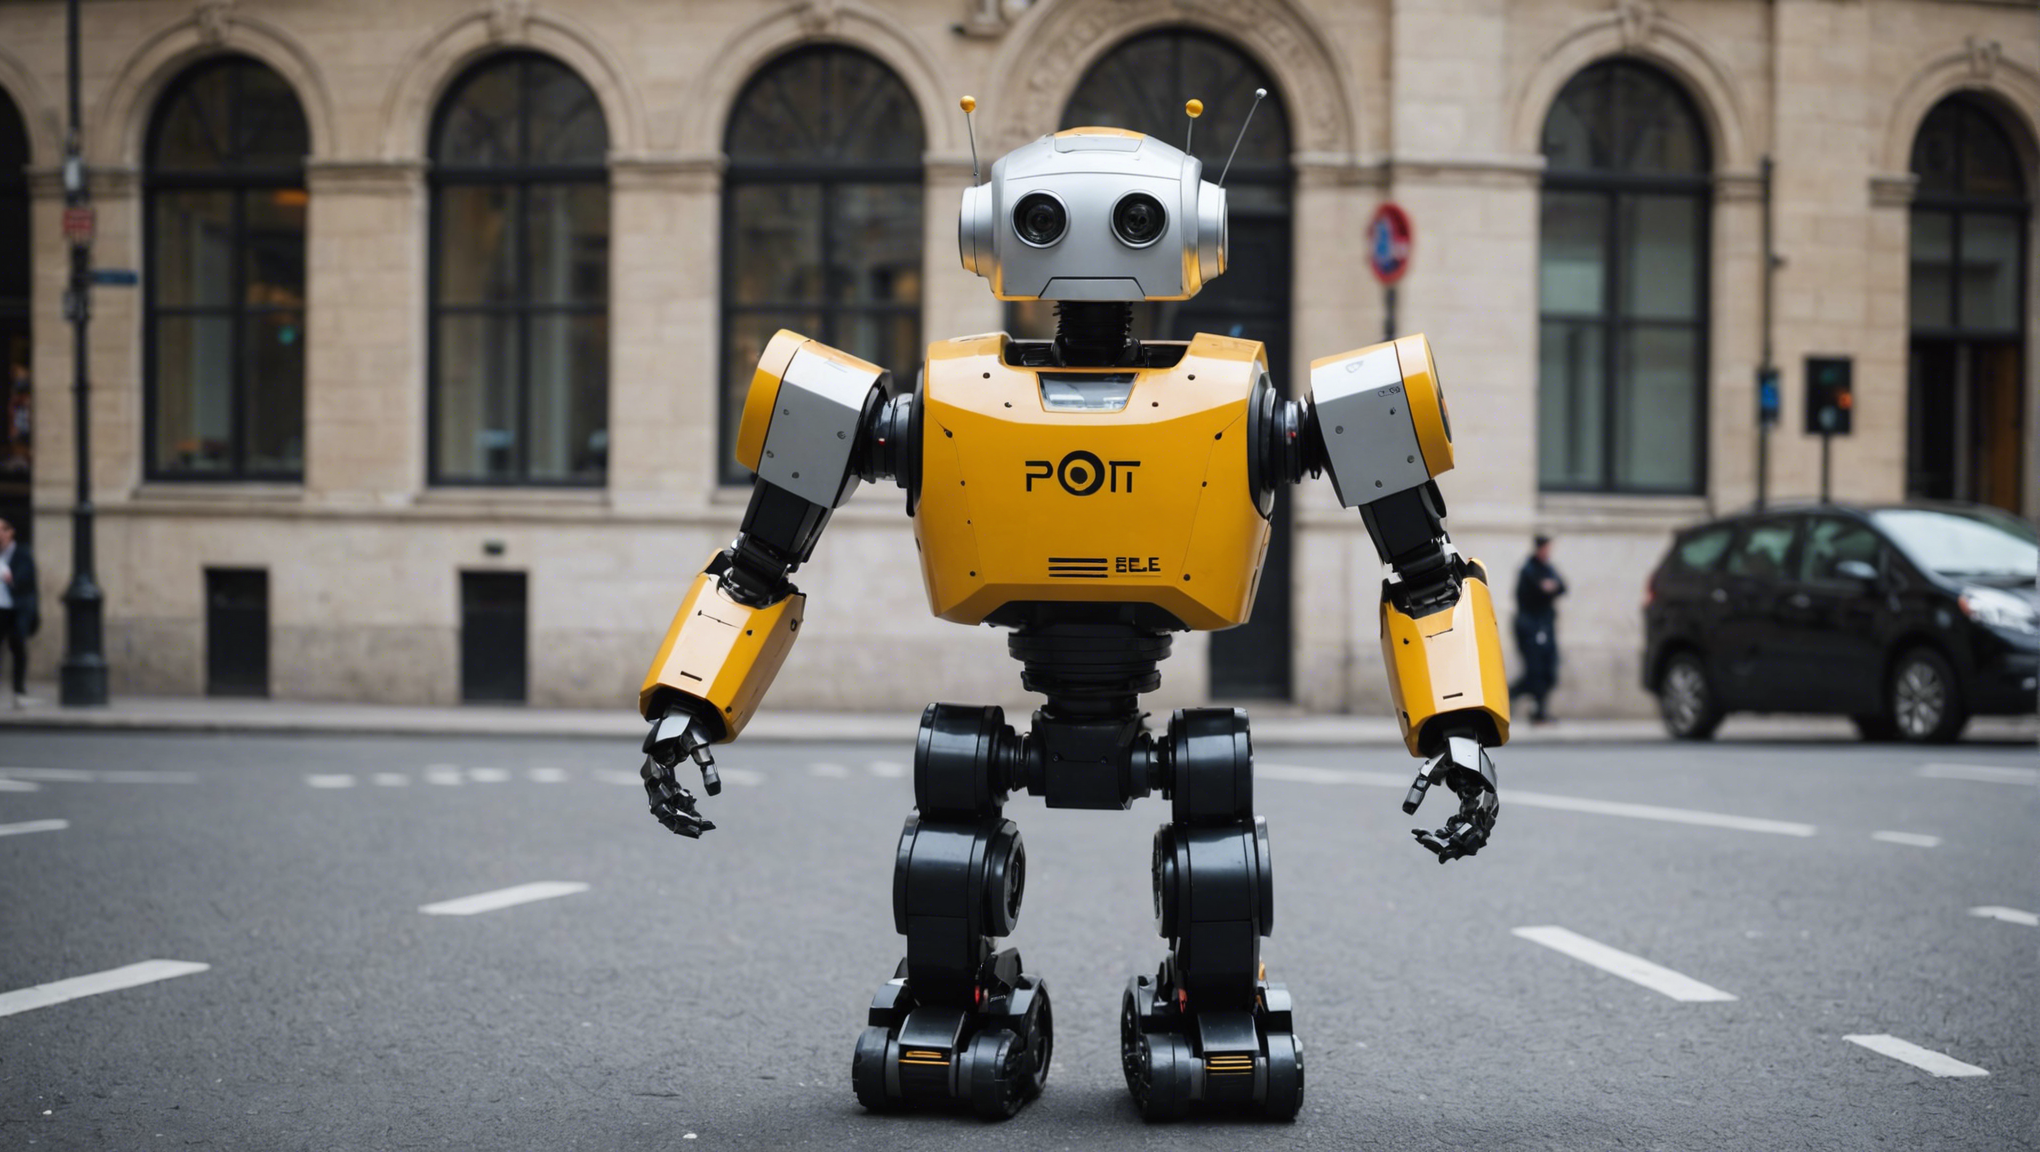 découvrez comment la location de robot peut avoir un impact sur la ville de saint-paul et sur son développement économique et technologique.